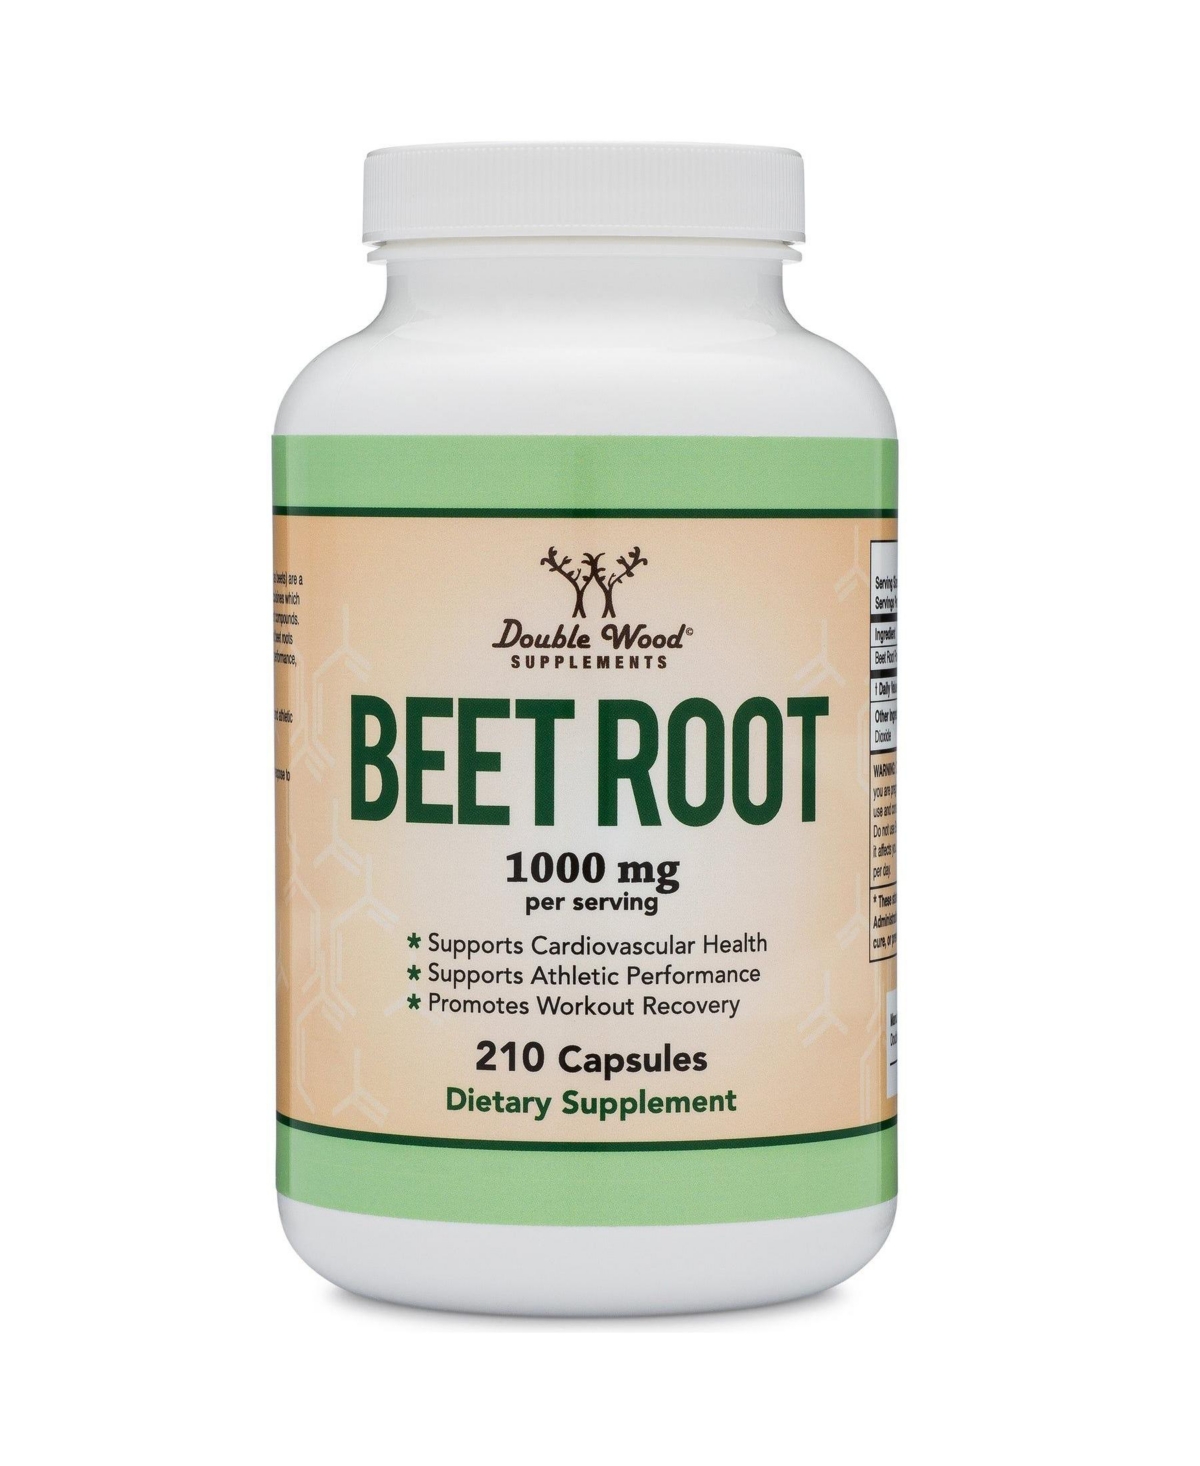 Beet Root - 210 capsules, 1000 mg servings